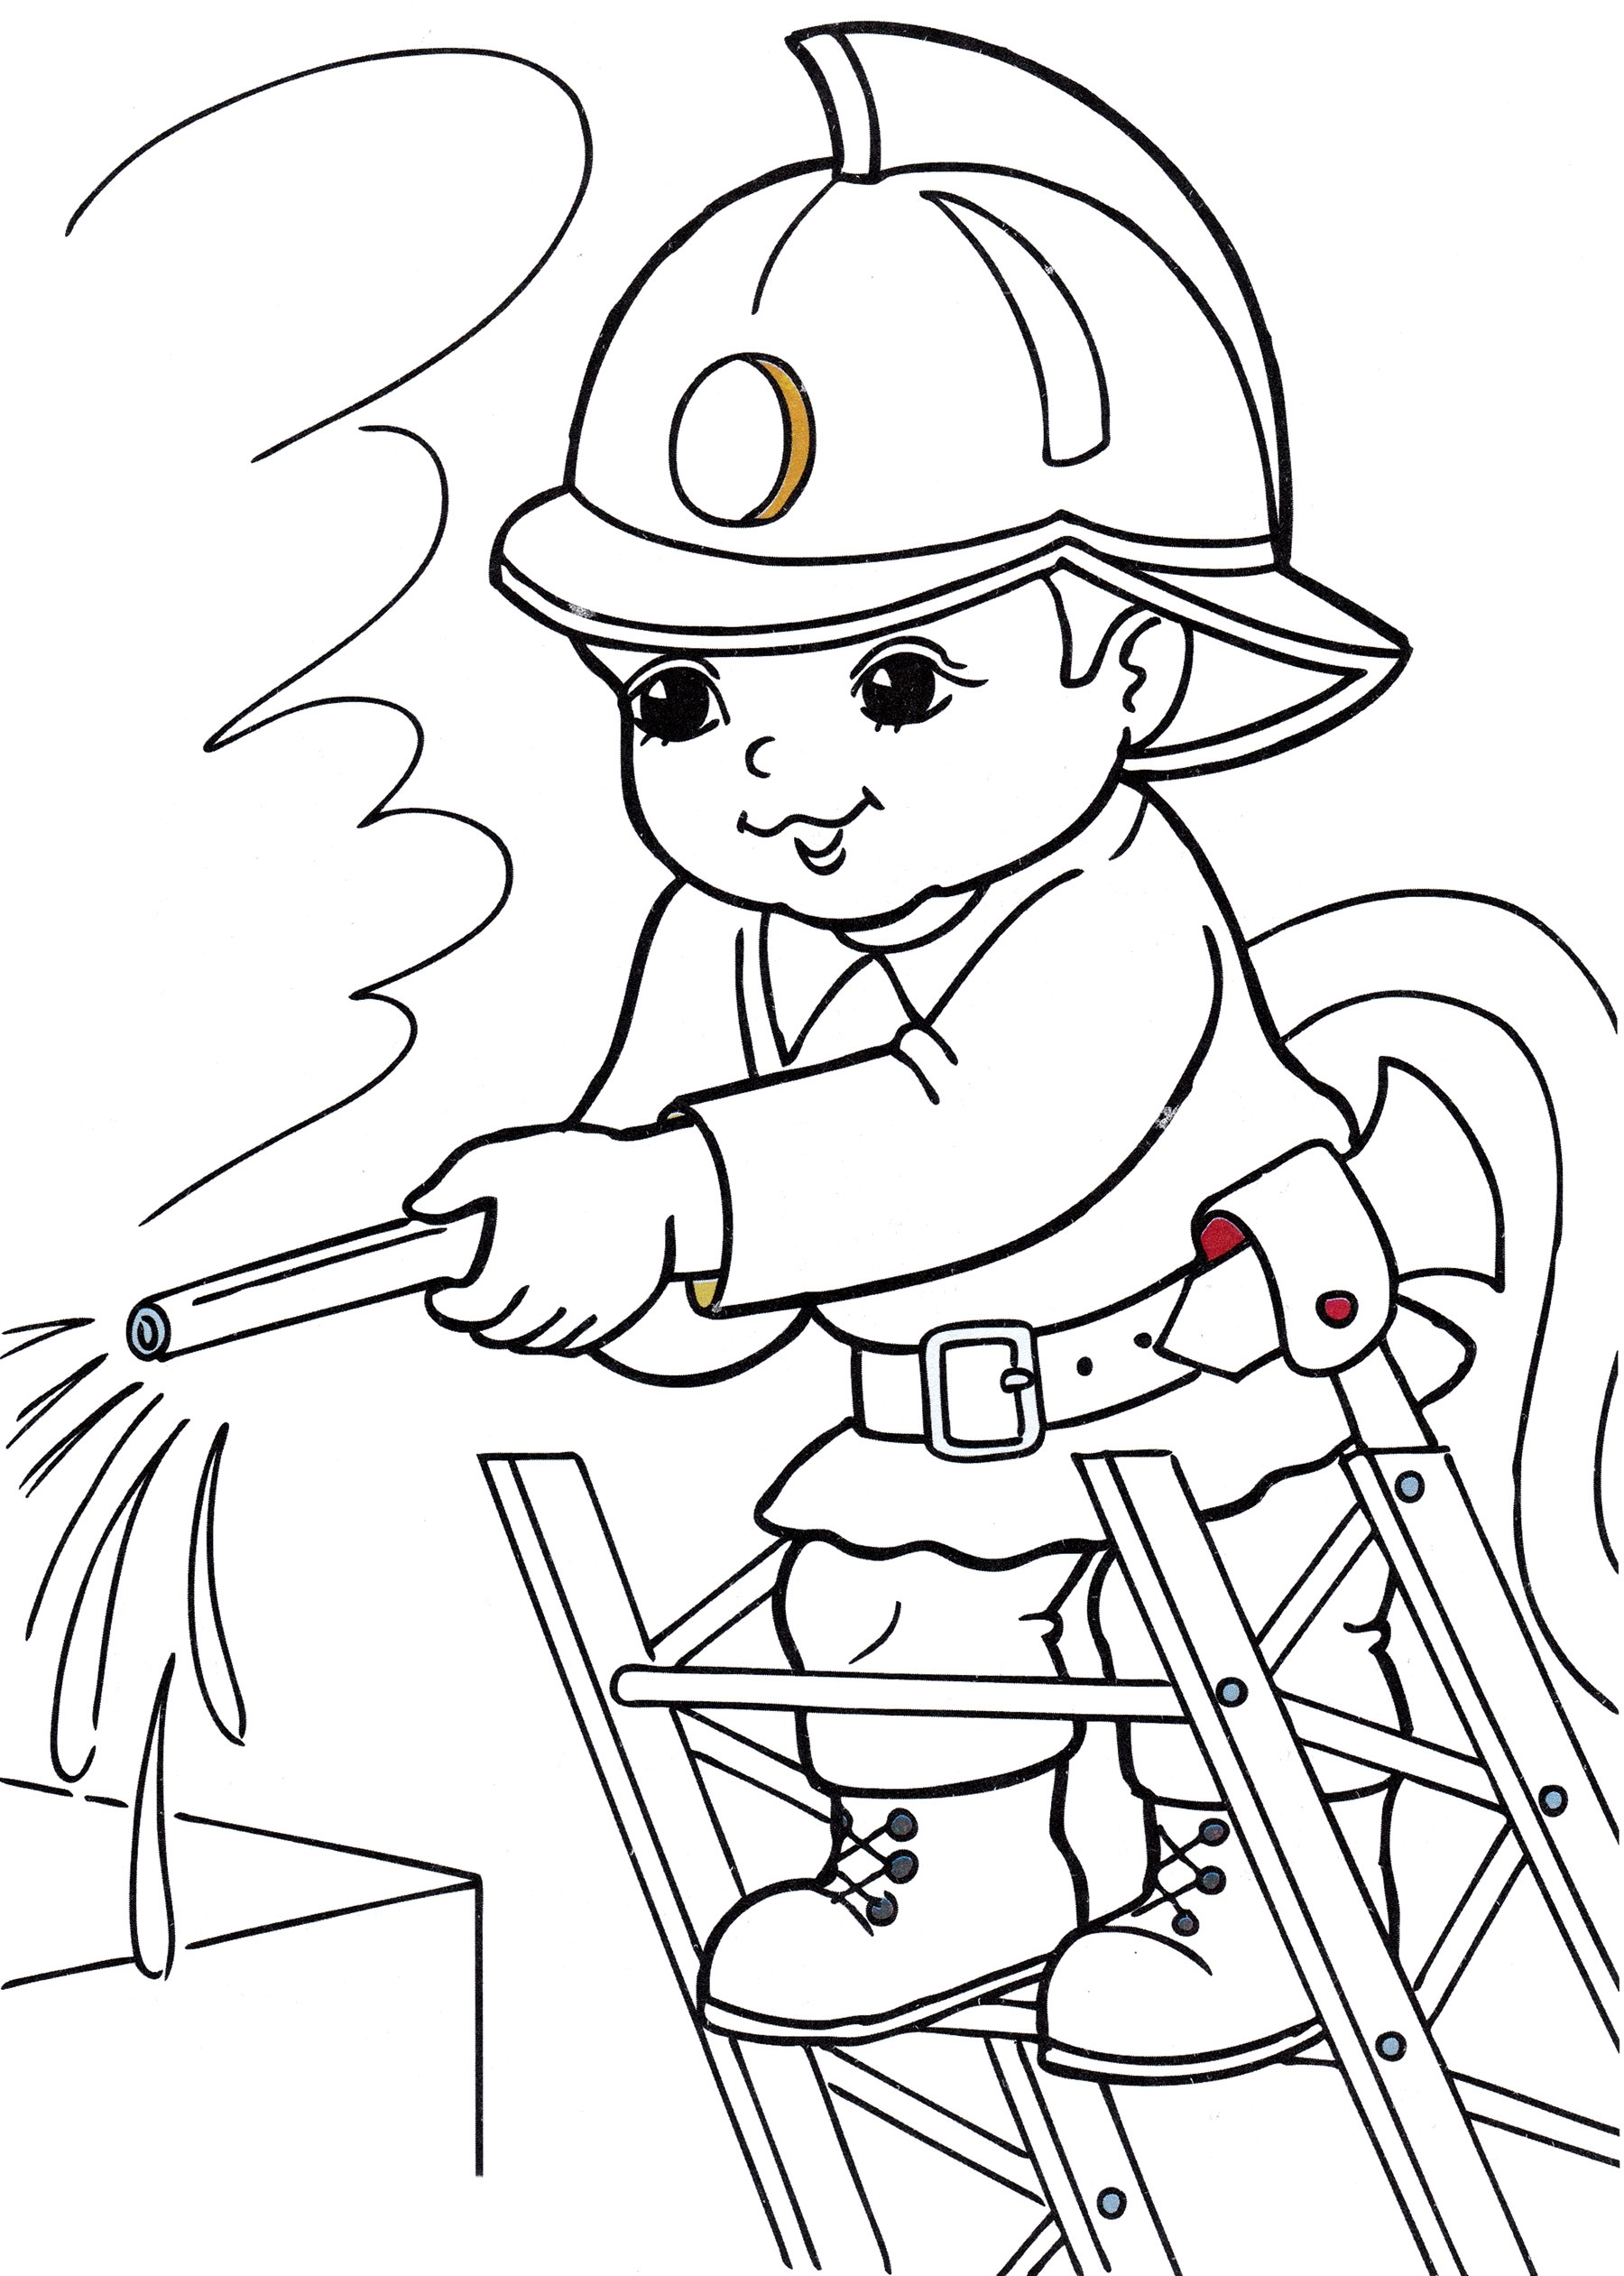 Раскраски на пожарную тематику для детей